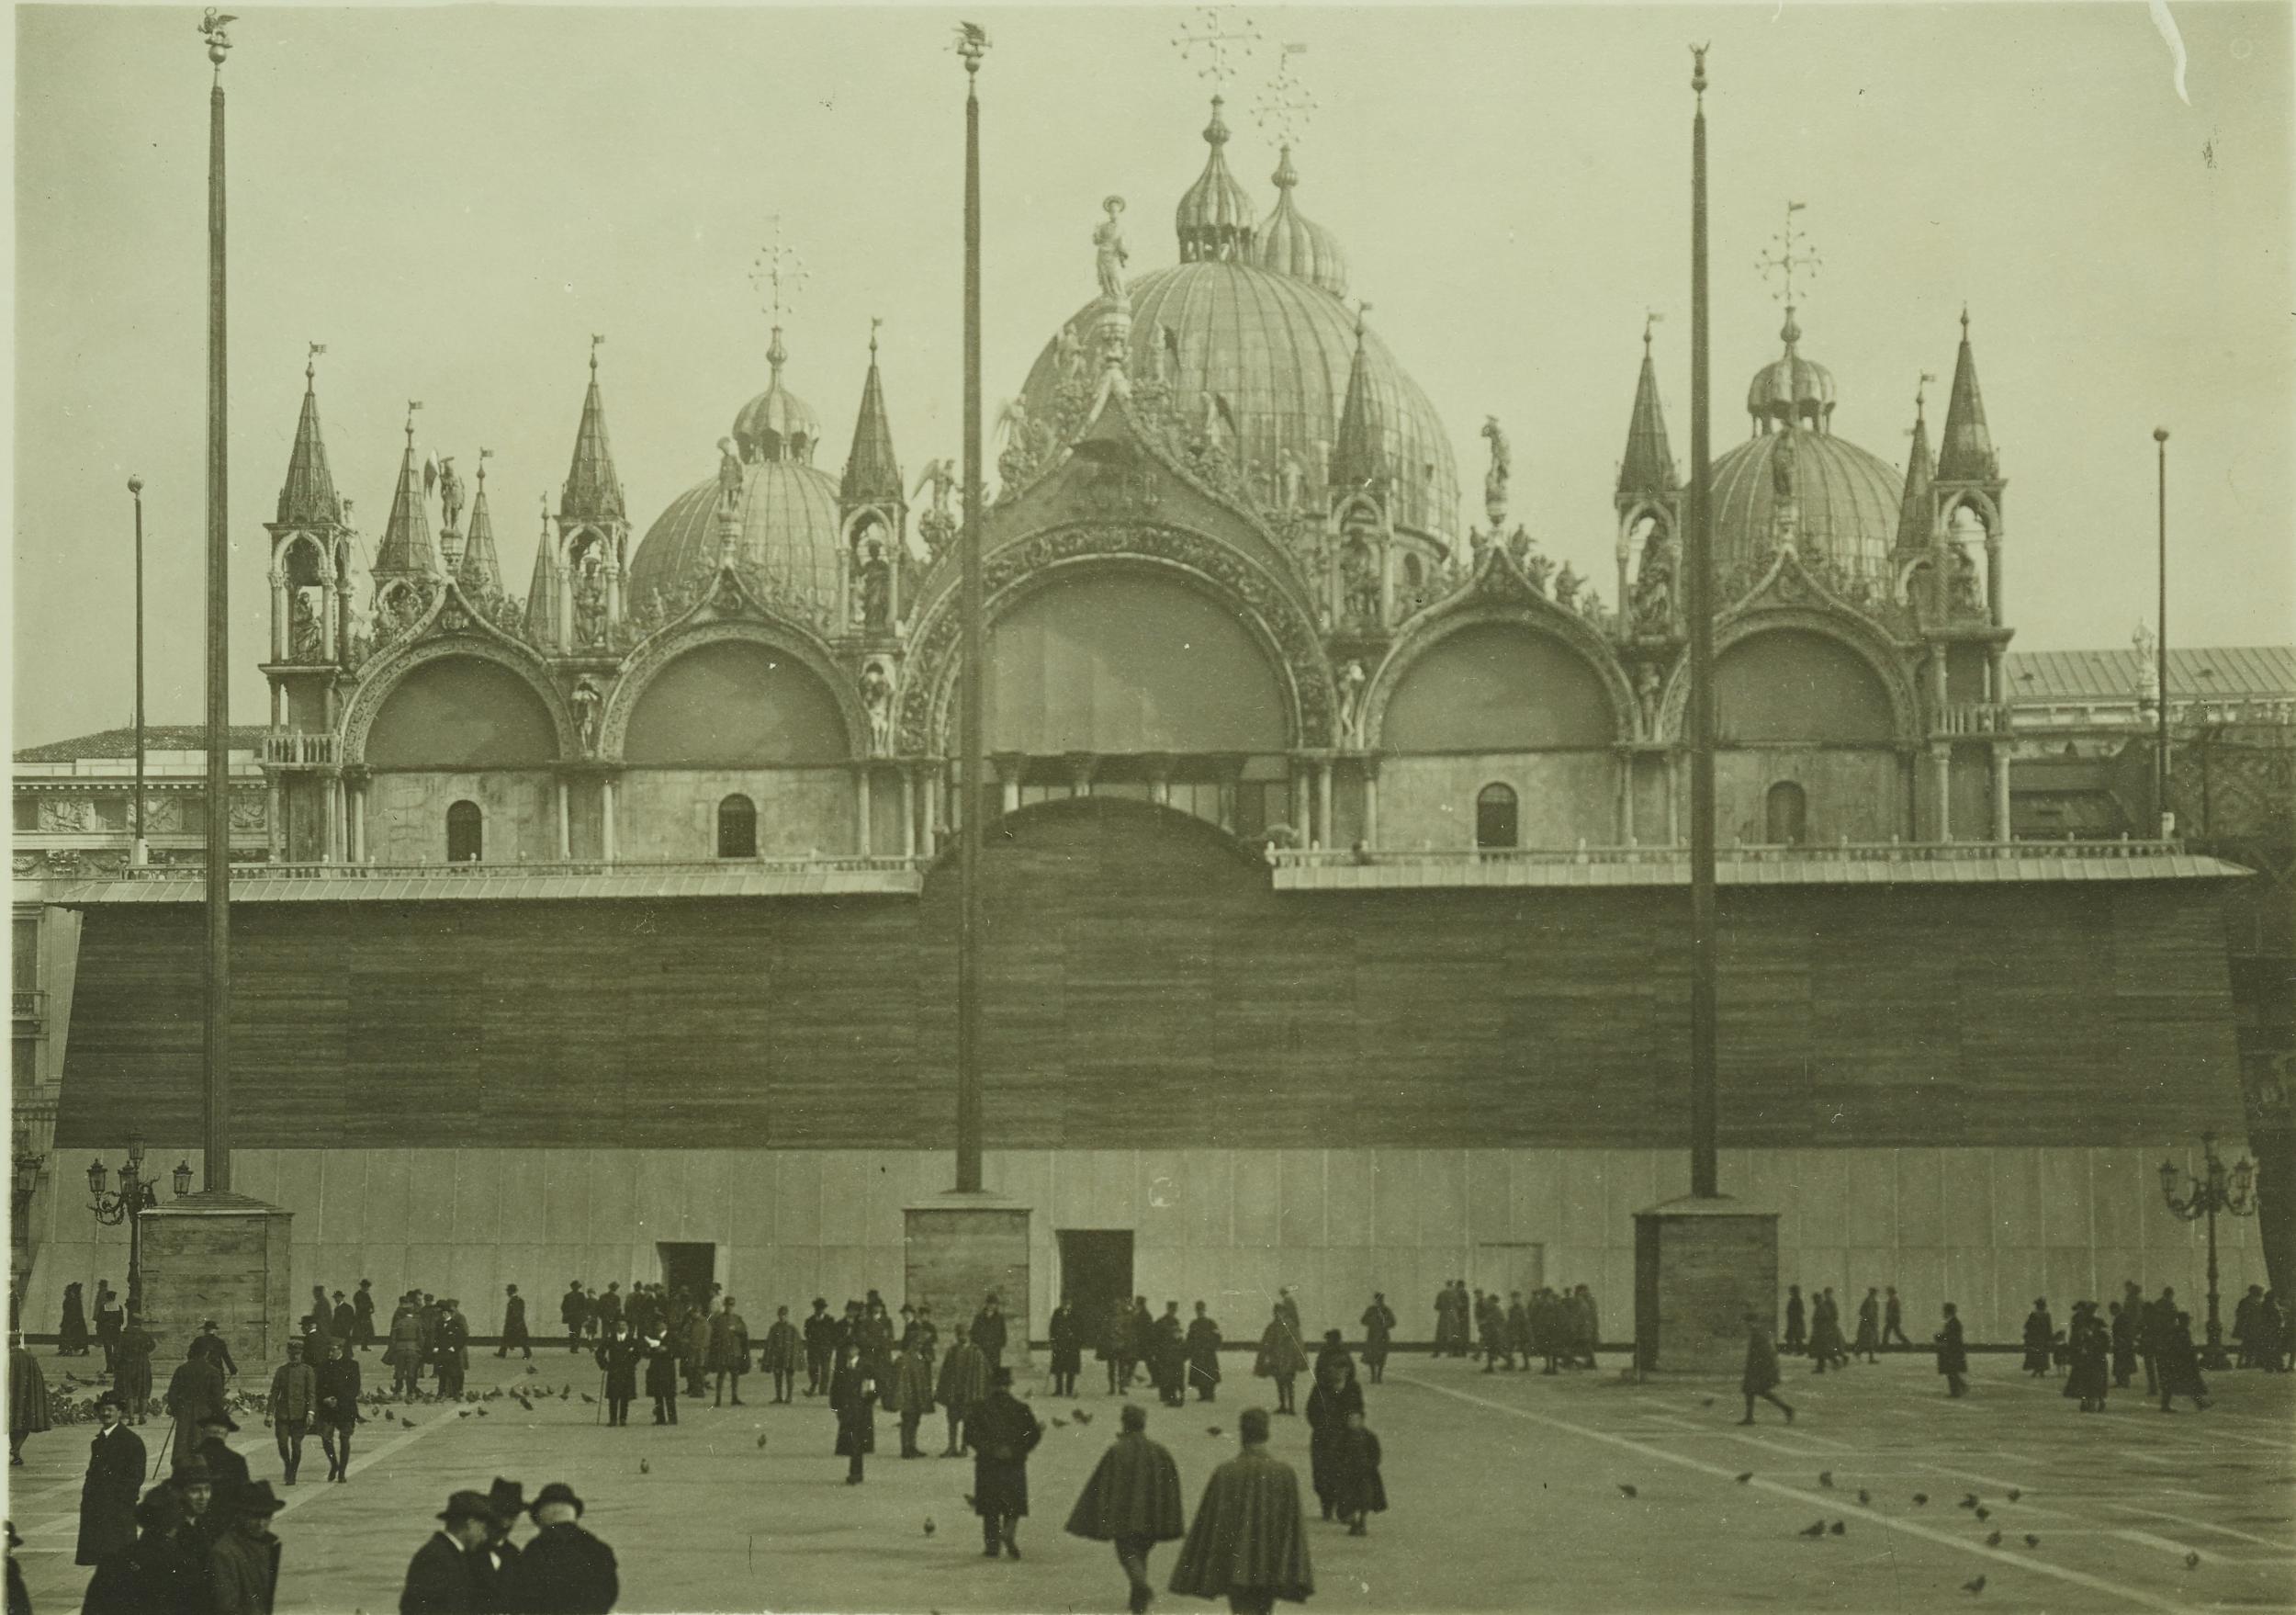 Fotografo non identificato, Venezia - Basilica di S. Marco, facciata, protezione anti bellica, 1915-1918, gelatina ai sali d'argento, MPI153026